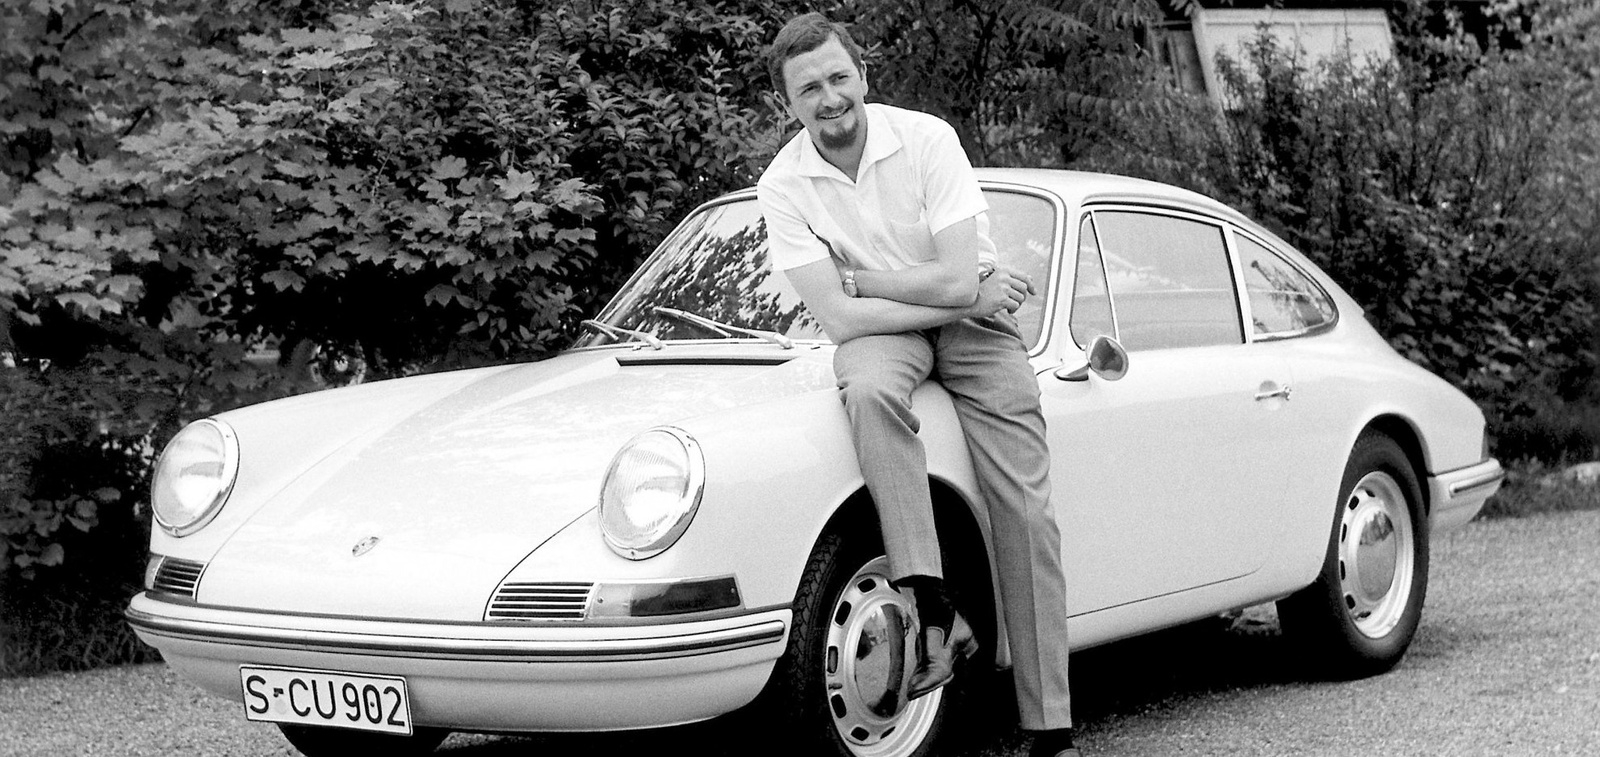 Industridesignern Ferdinand Alexander Porsche var sonson till Ferdinand Porsche. Hans mest kända formgivning är bilen som nästan blivit synonym med bilmärket, 911.
Foto: Porsche